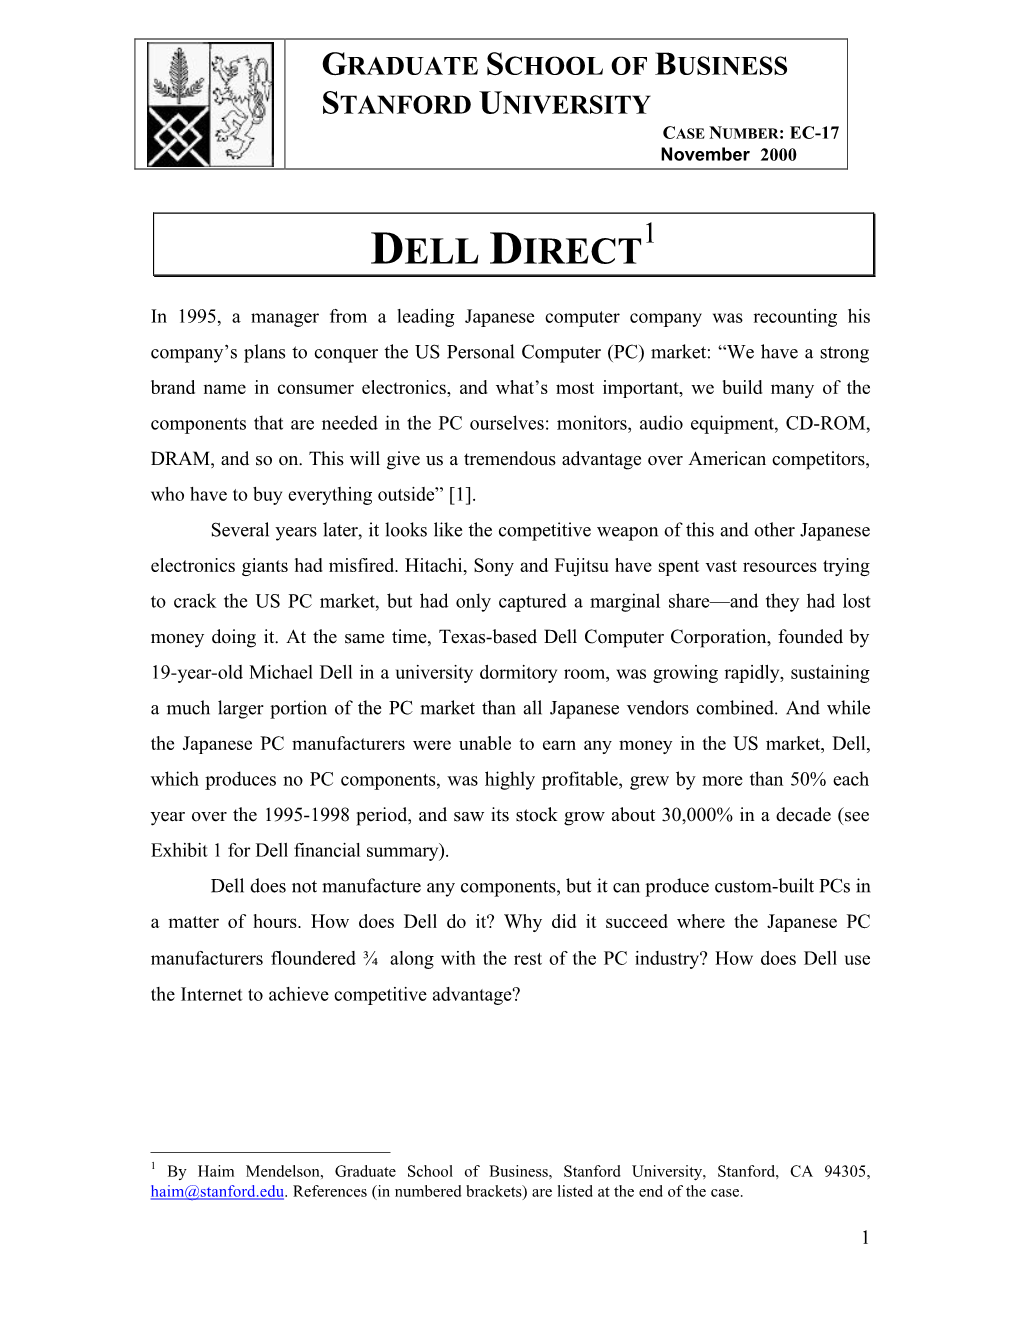 Dell Direct1